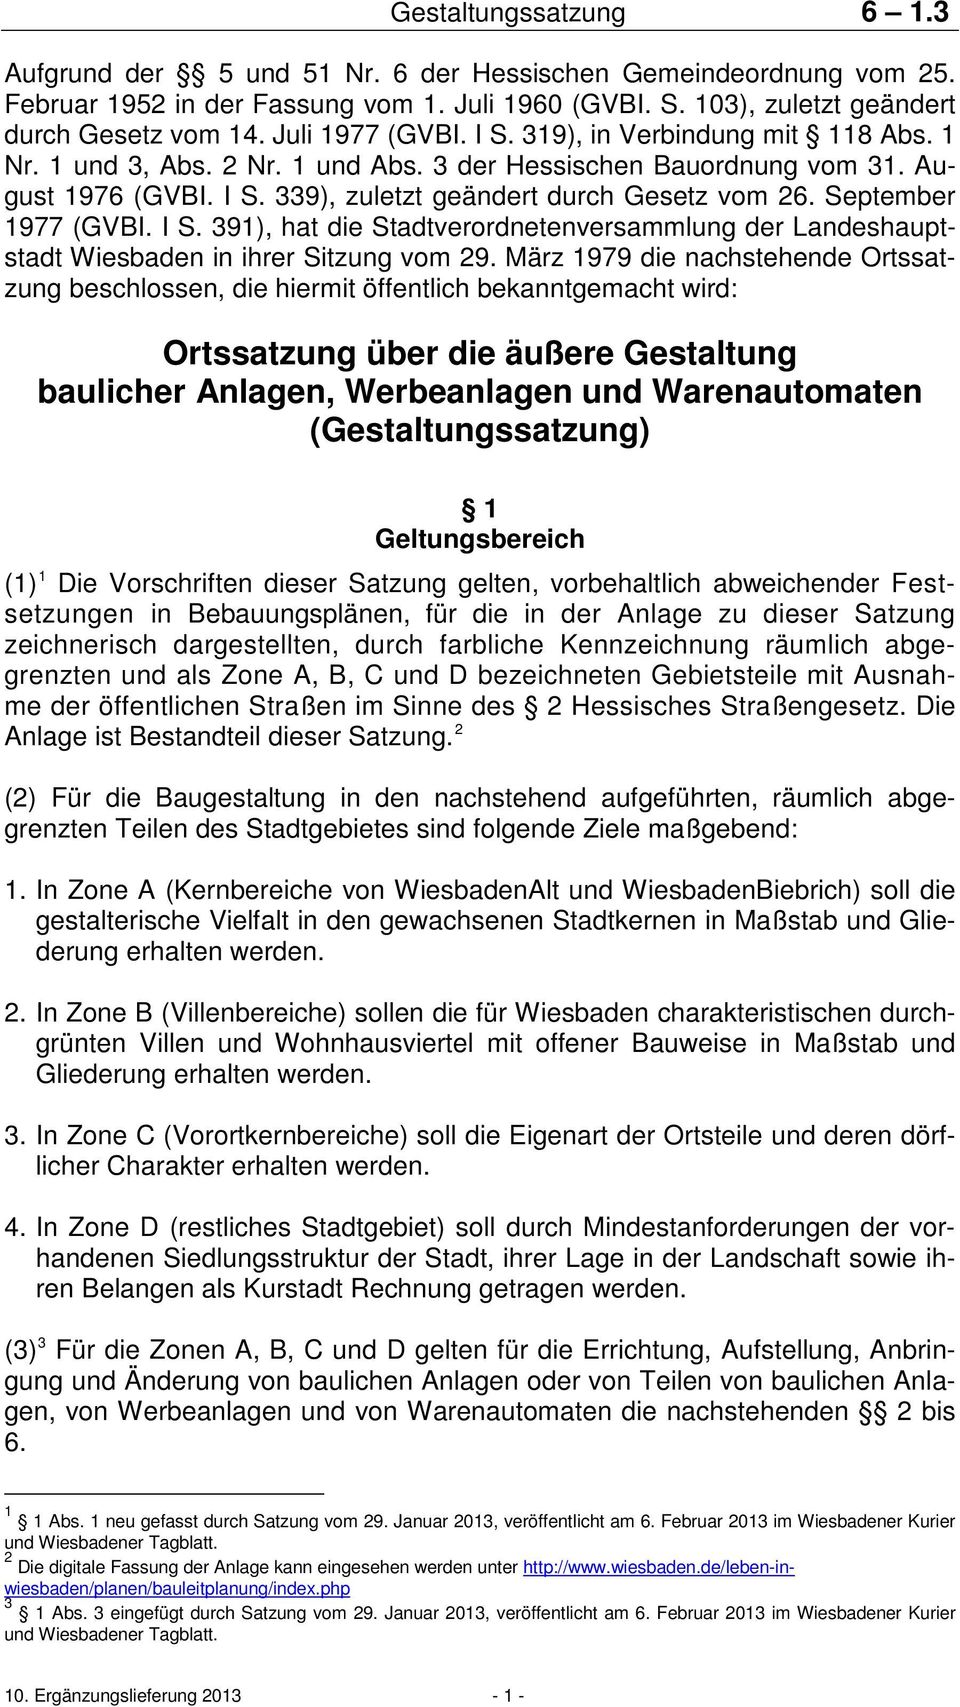 339), zuletzt geändert durch Gesetz vom 26. September 1977 (GVBI. I S. 391), hat die Stadtverordnetenversammlung der Landeshauptstadt Wiesbaden in ihrer Sitzung vom 29.